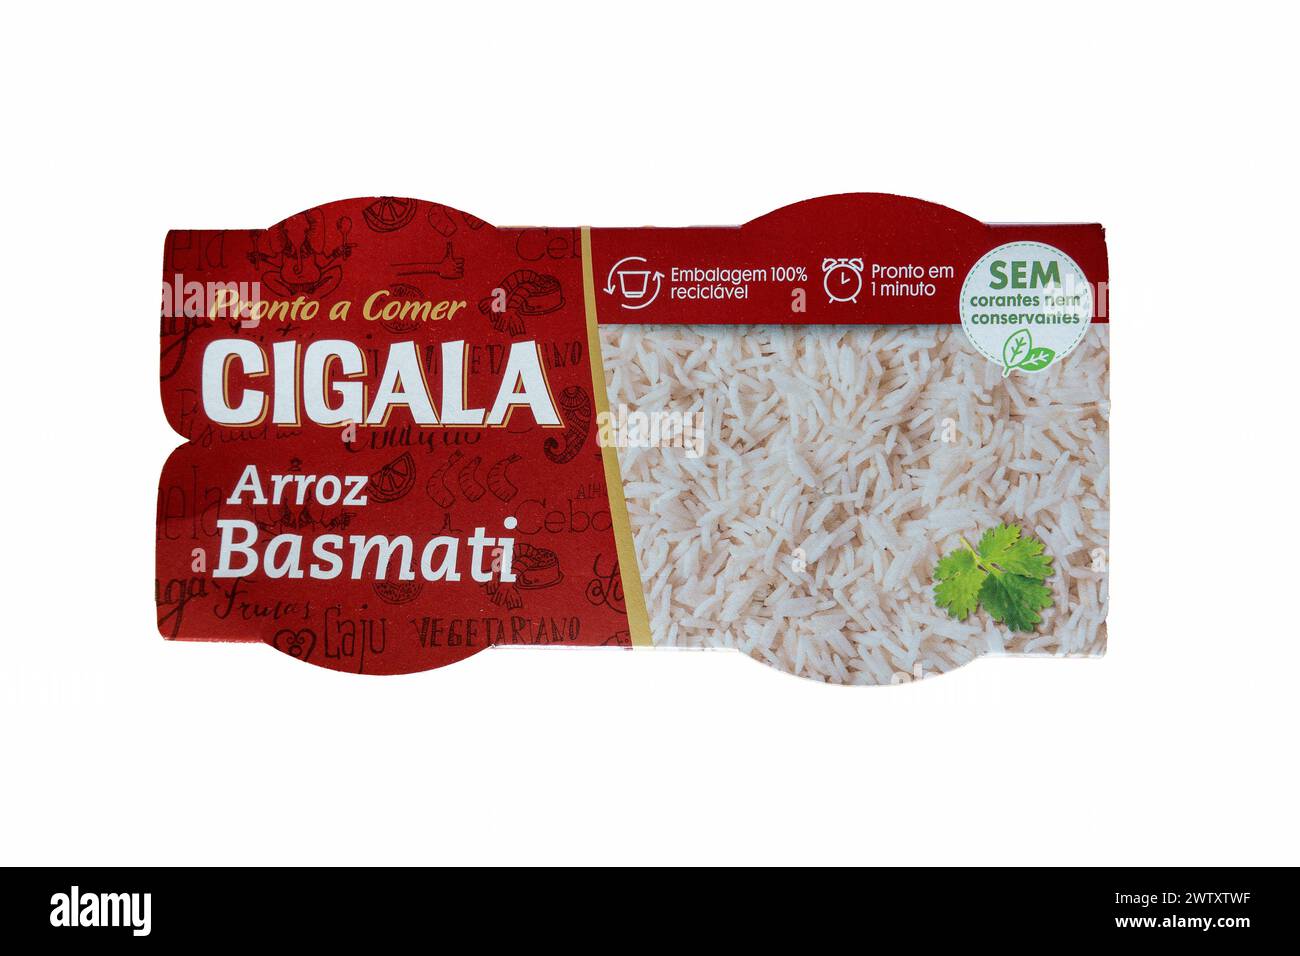 Cigala Brand instant Cook Basmati Rice emballage à vendre dans les supermarchés portugais isolé découpé sur fond blanc Banque D'Images